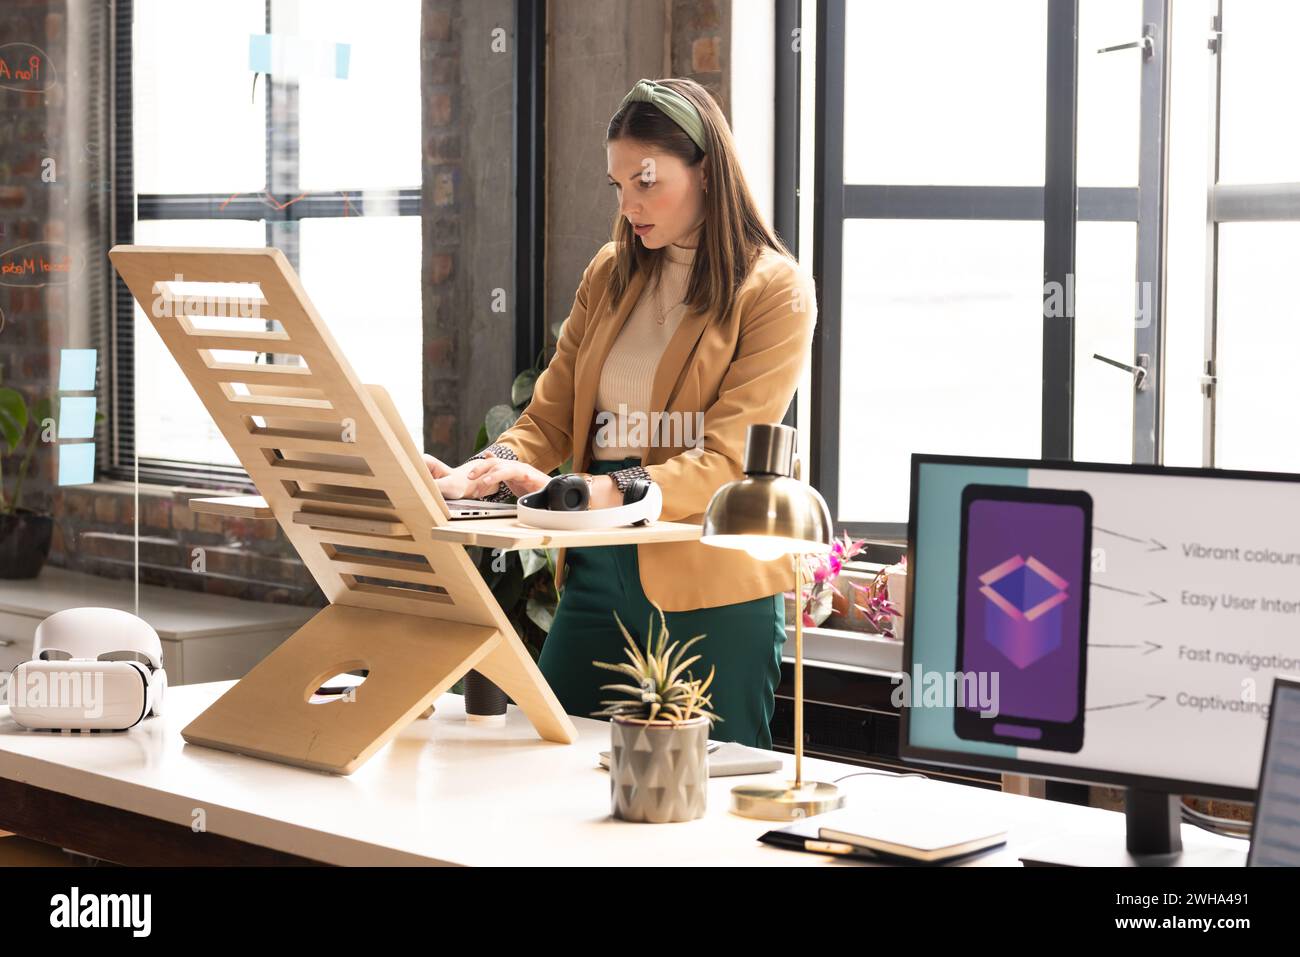 Die junge kaukasische Frau arbeitet an einem zwanglosen Bürotisch in einem Büro Stockfoto